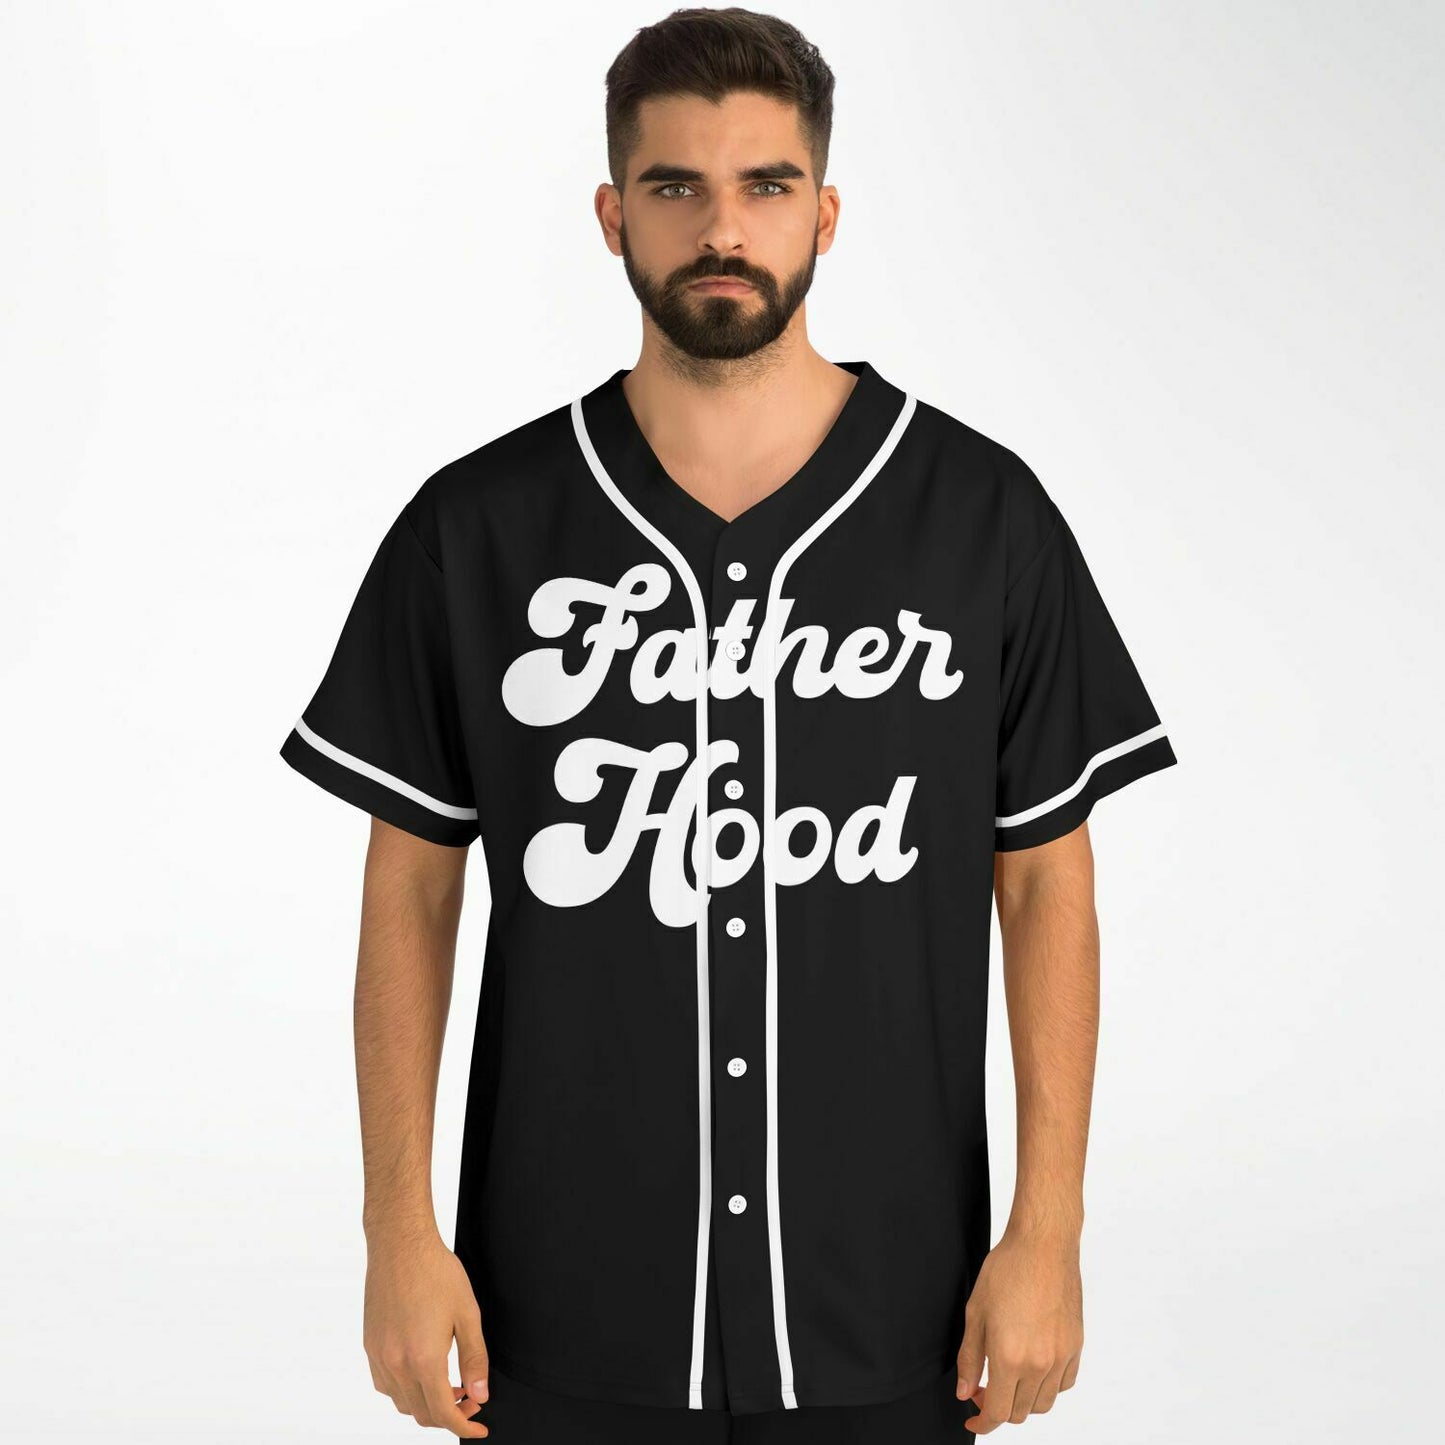 Fatherhood Baseball Jersey - Black & White